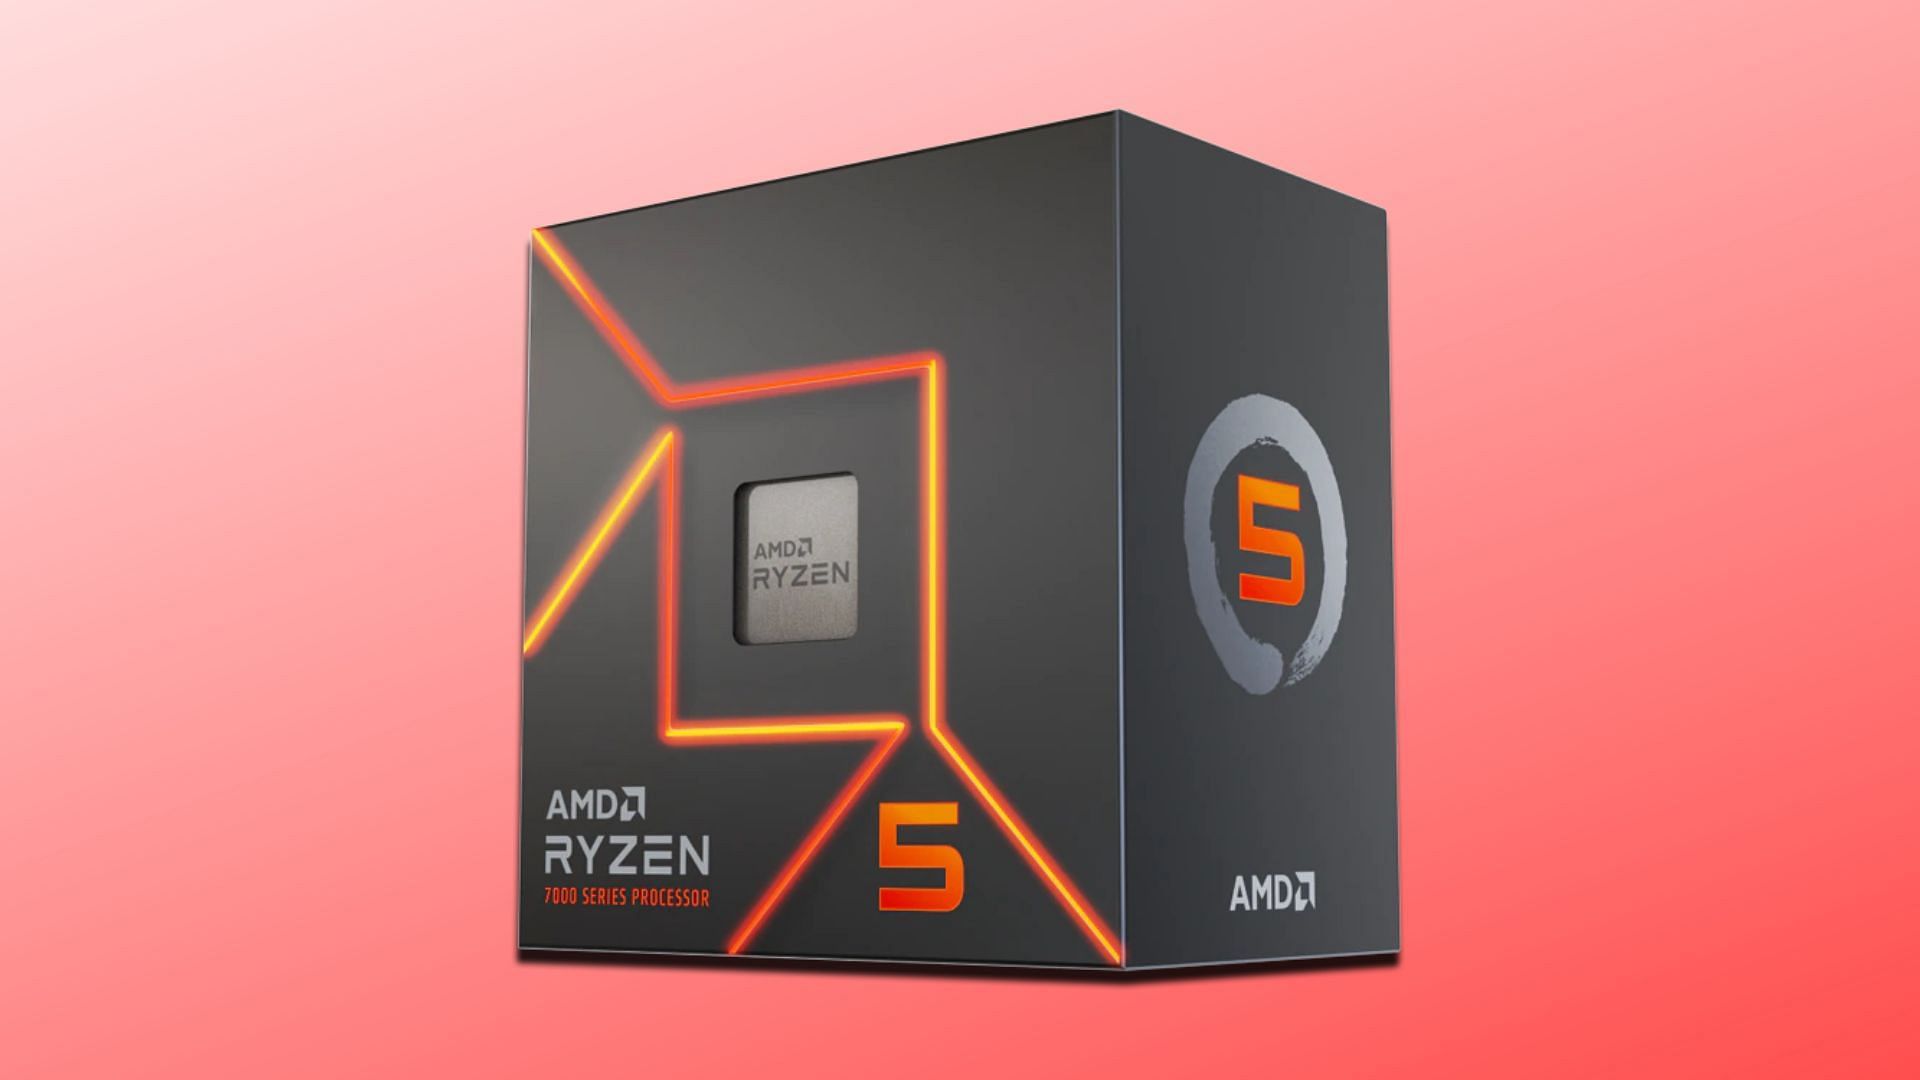 The Ryzen 5 7600 chip